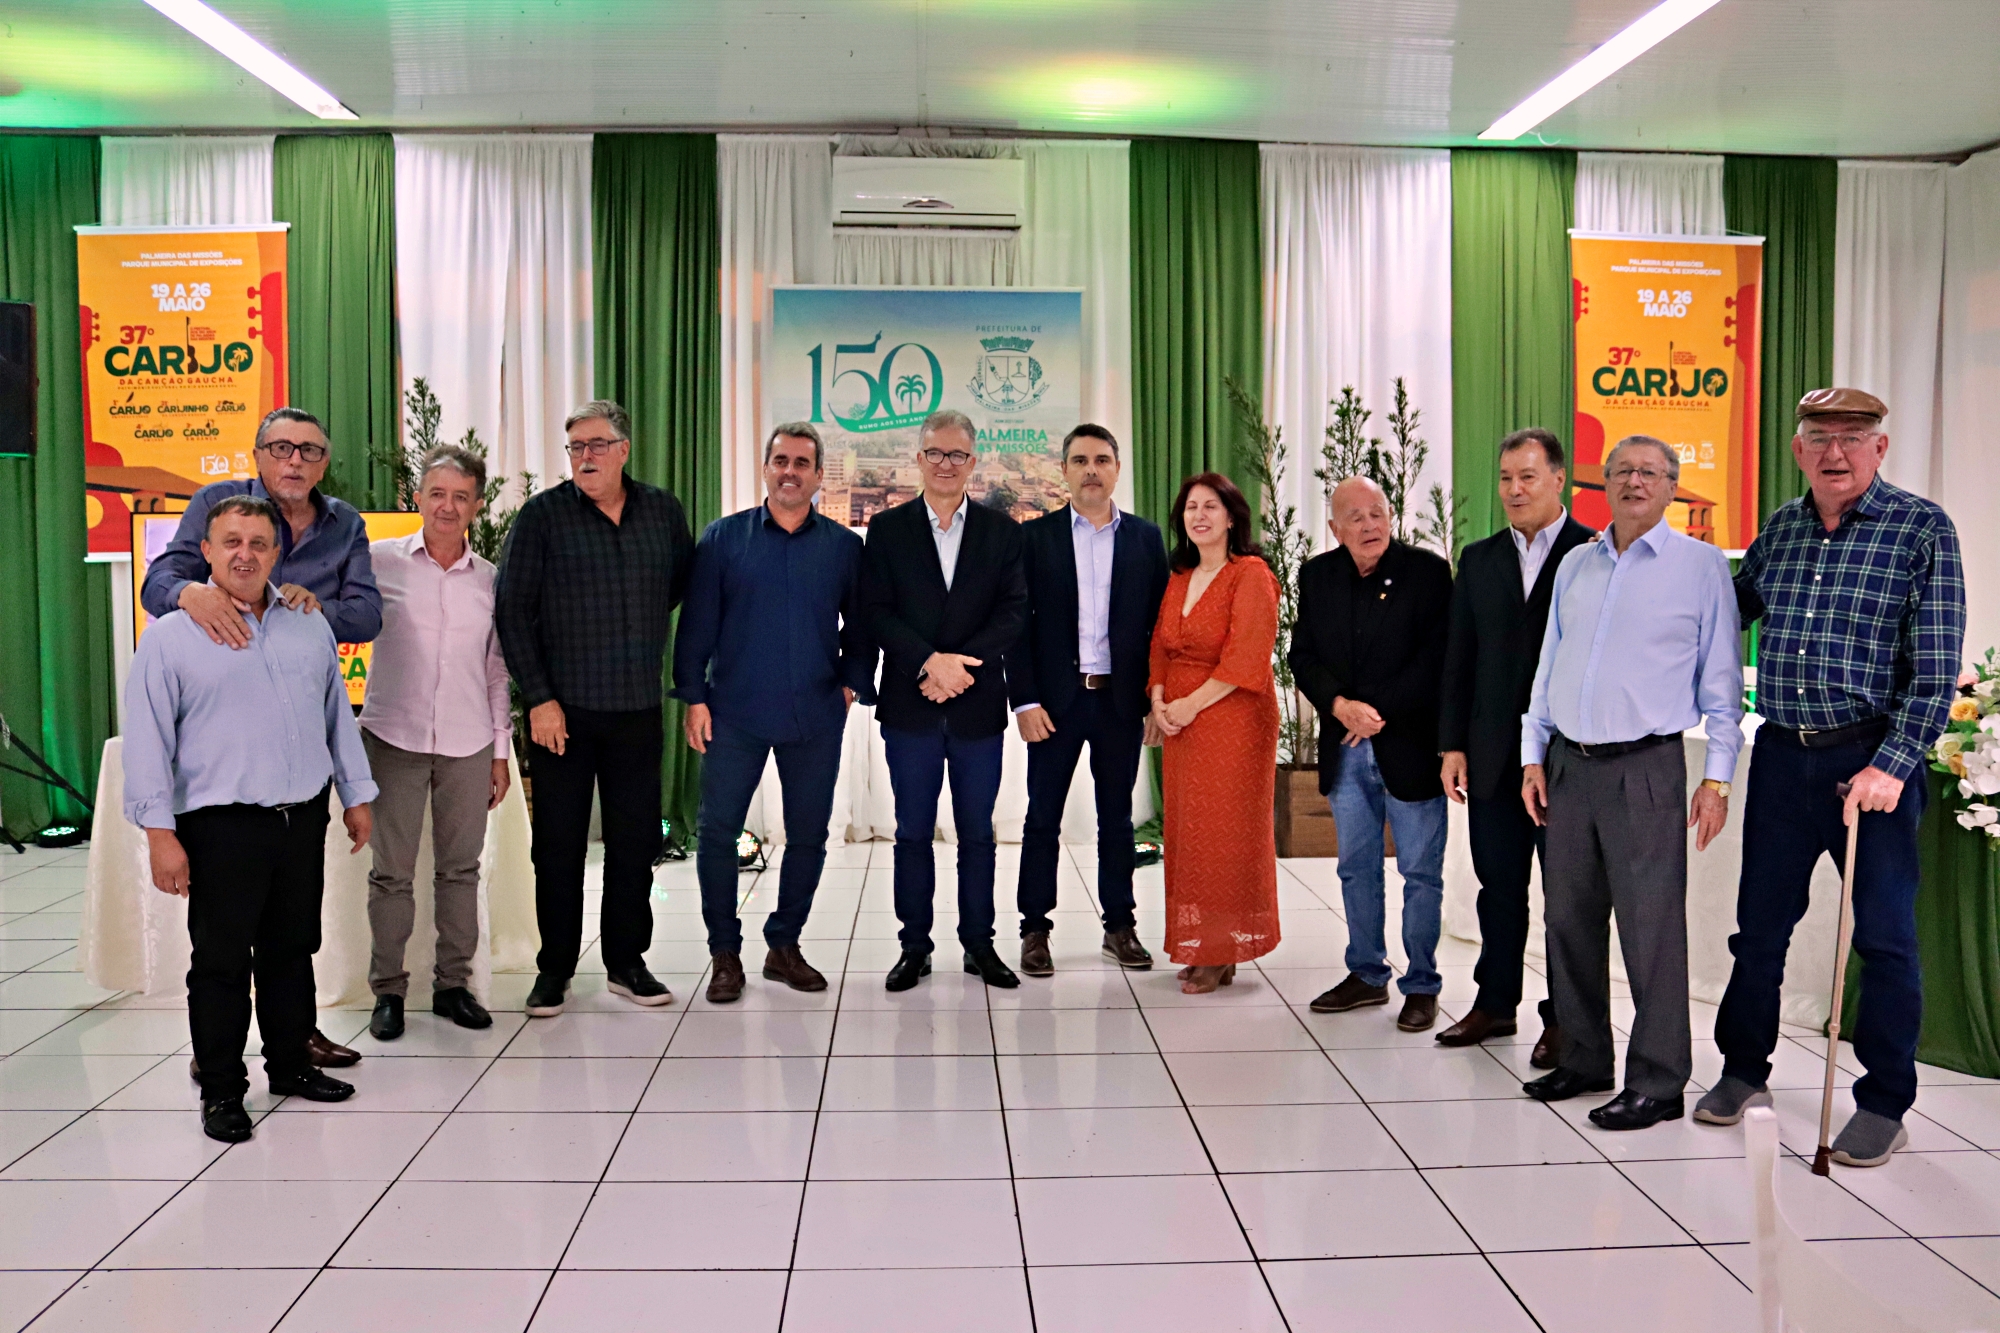 Comissão Organizadora do 37º Carijo da Canção Gaúcha realiza homenagem aos ex-presidentes e prefeitos do festival em celebração aos 150 anos de Palmeira das Missões